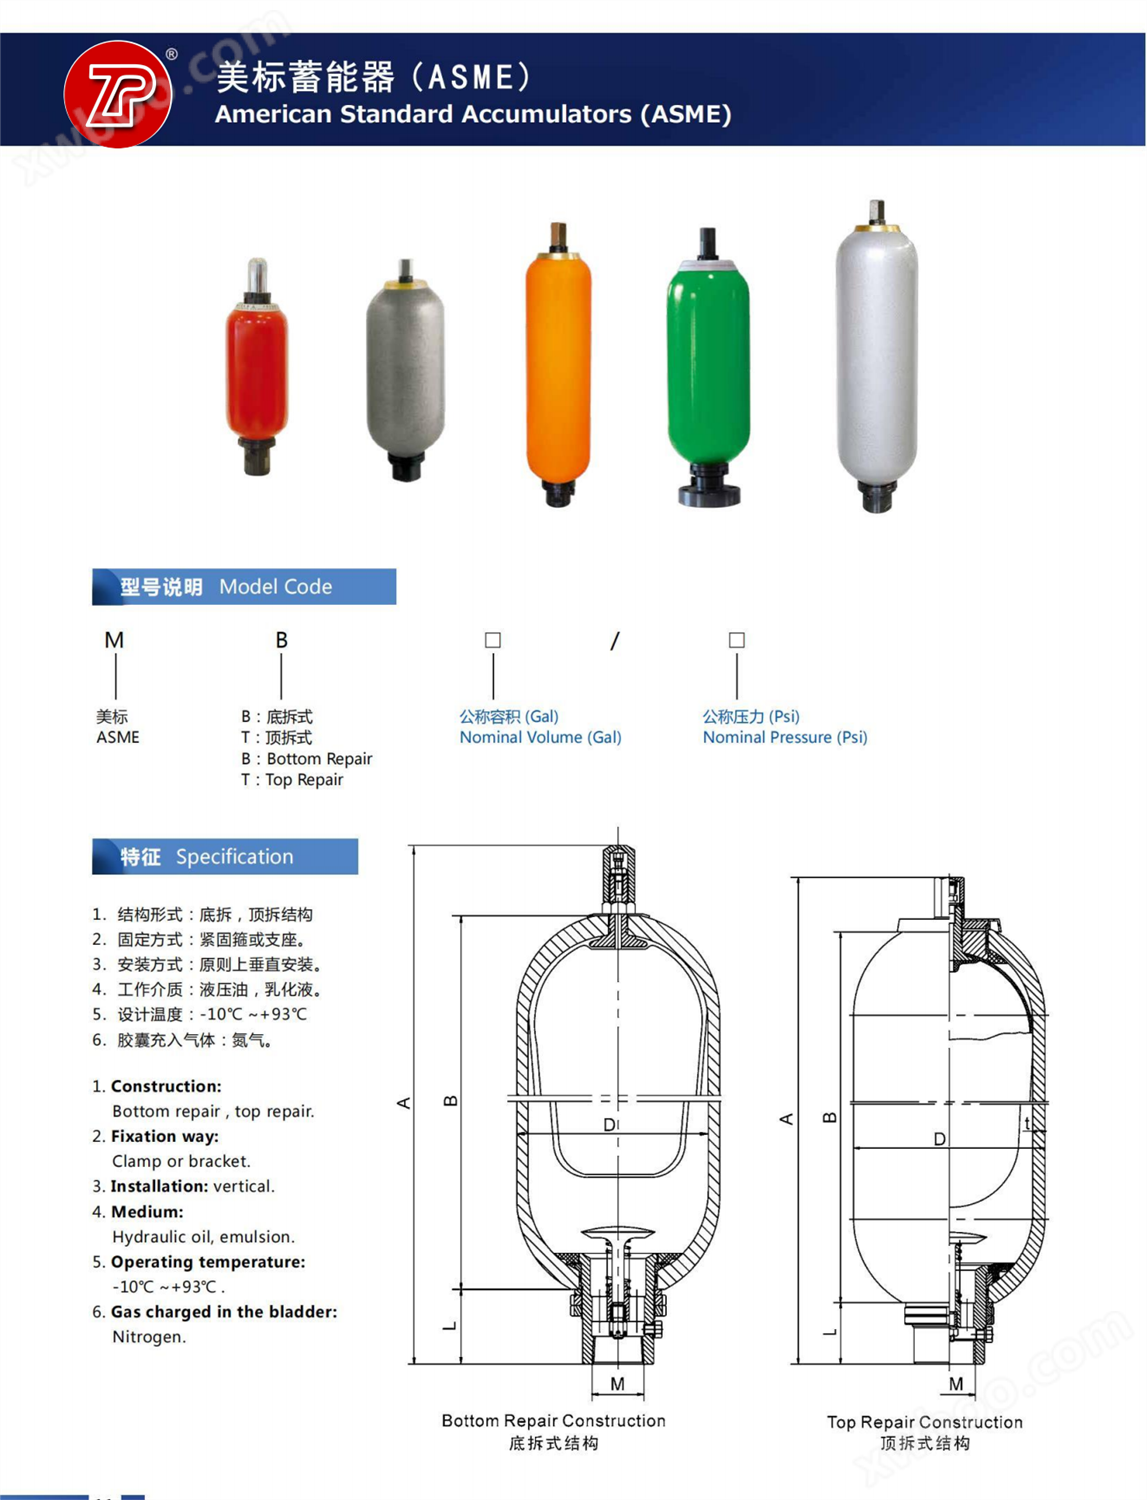 囊式蓄能器 欧标 美标 派克 奥莱尔储能器 sb330缓冲罐水锤消除器 - 囊式蓄能器 - 4